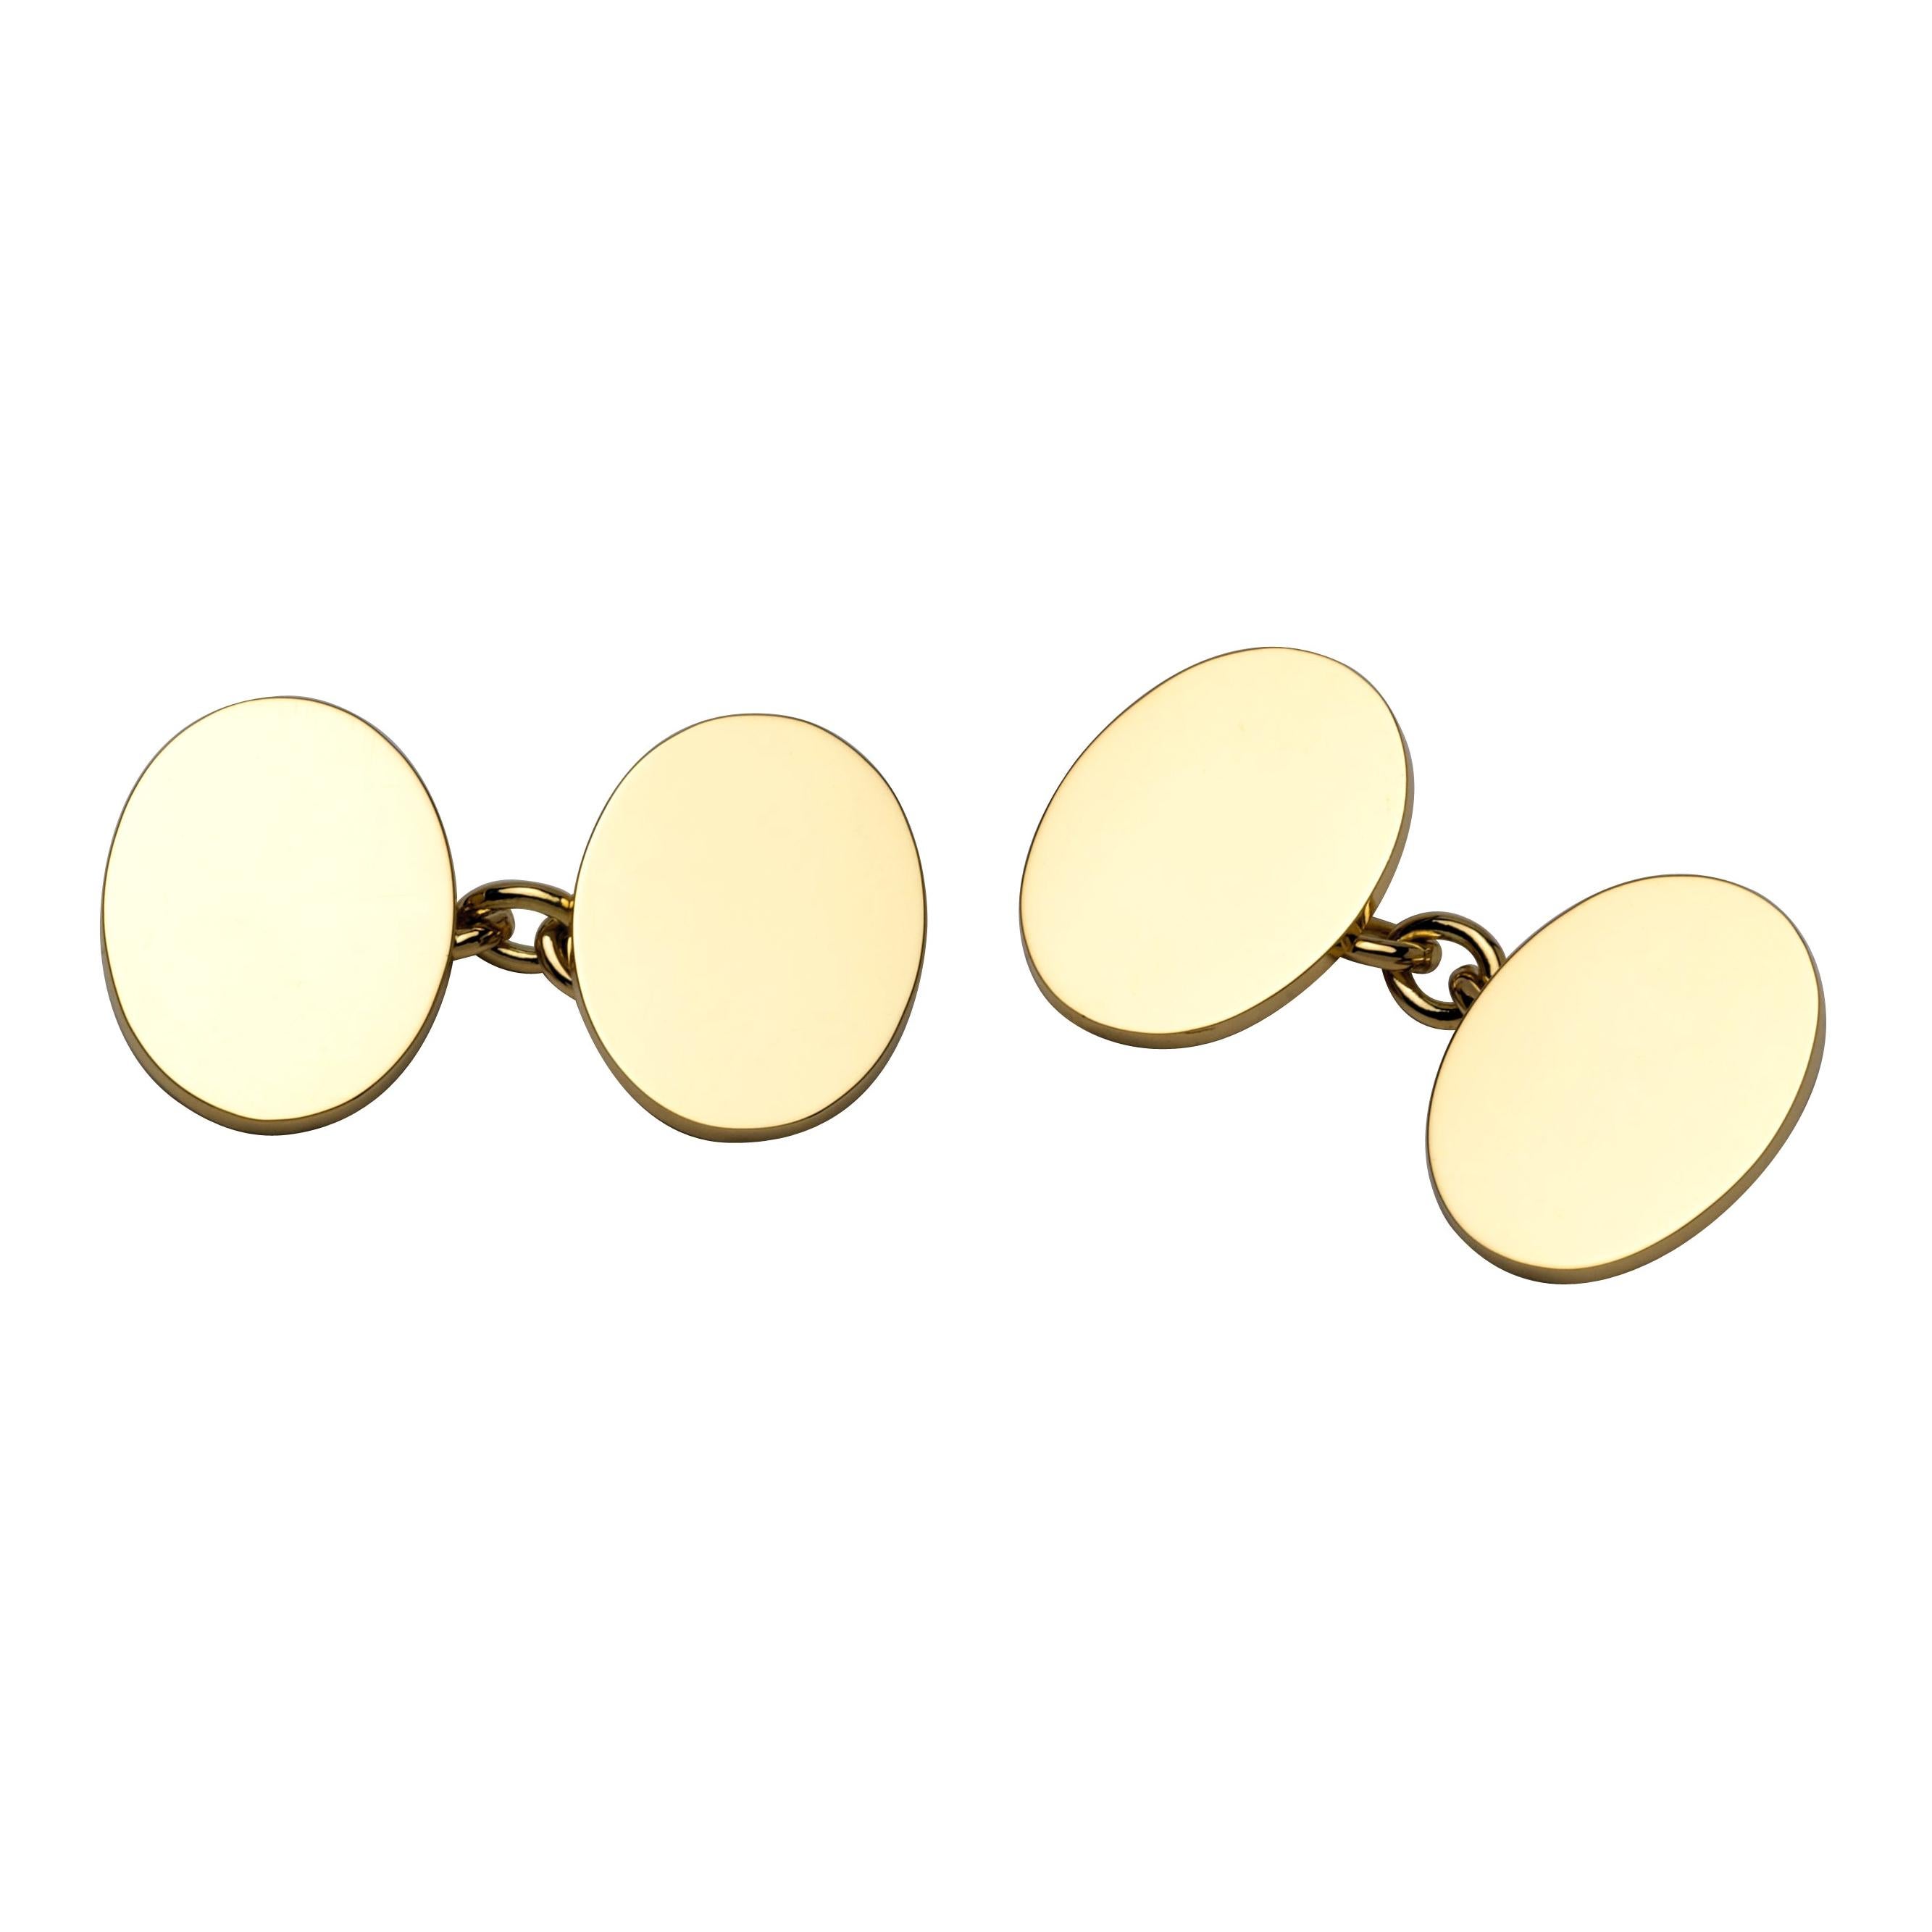 Deakin & Francis 18 Karat Gold schlichte ovale Manschettenknöpfe mit Kettenglieder